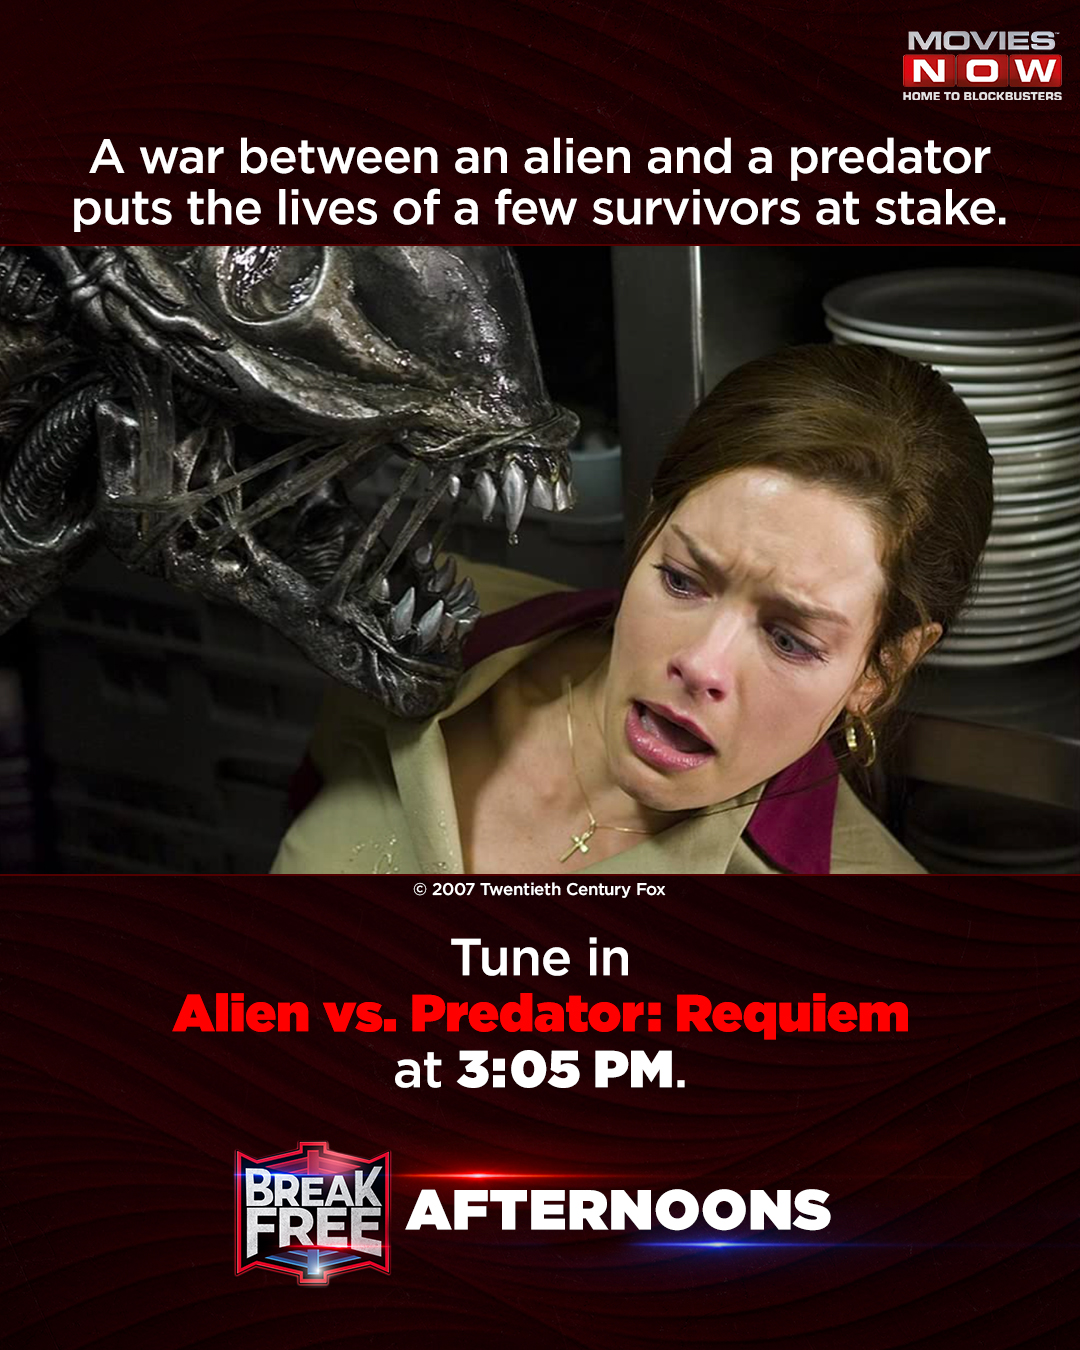 Alien versus Predator demo to arrive tommorow